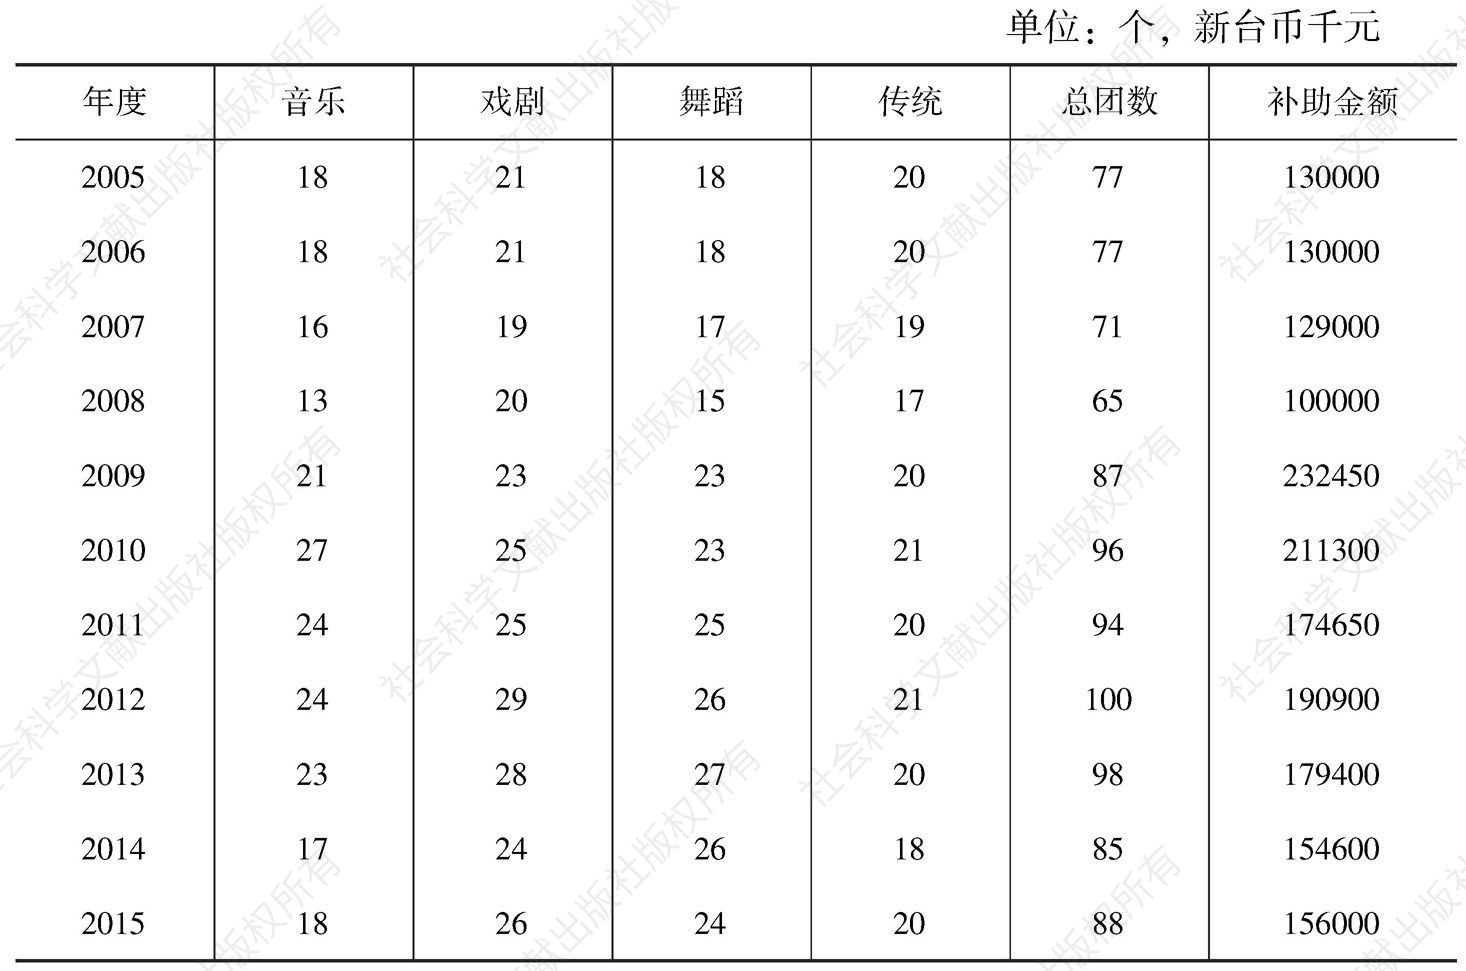 表1 2005～2015年台湾“文化部”分级奖助团队数量及补助总金额一览